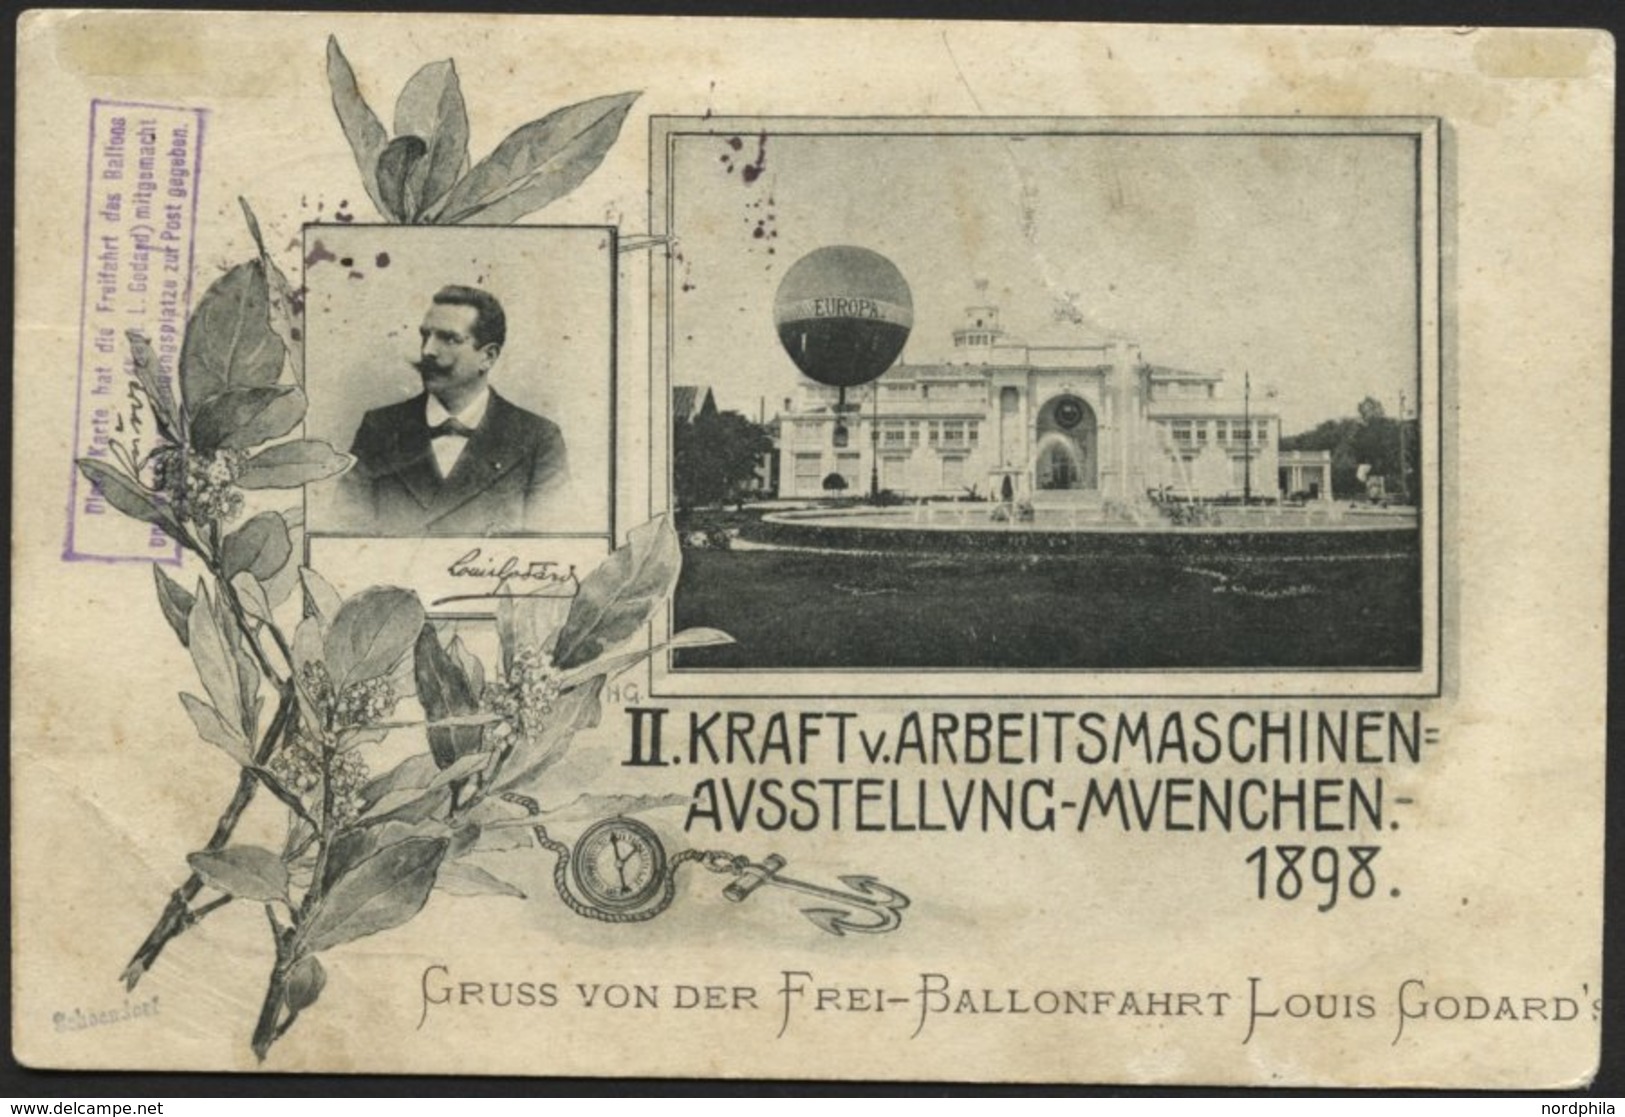 BALLON-FAHRTEN 1897-1916 15.8.1898, Freifahrt Des Ballons EUROPA Mit Kapitän Louis Godard, Aufstieg Am 1. Ausstellungsta - Mongolfiere